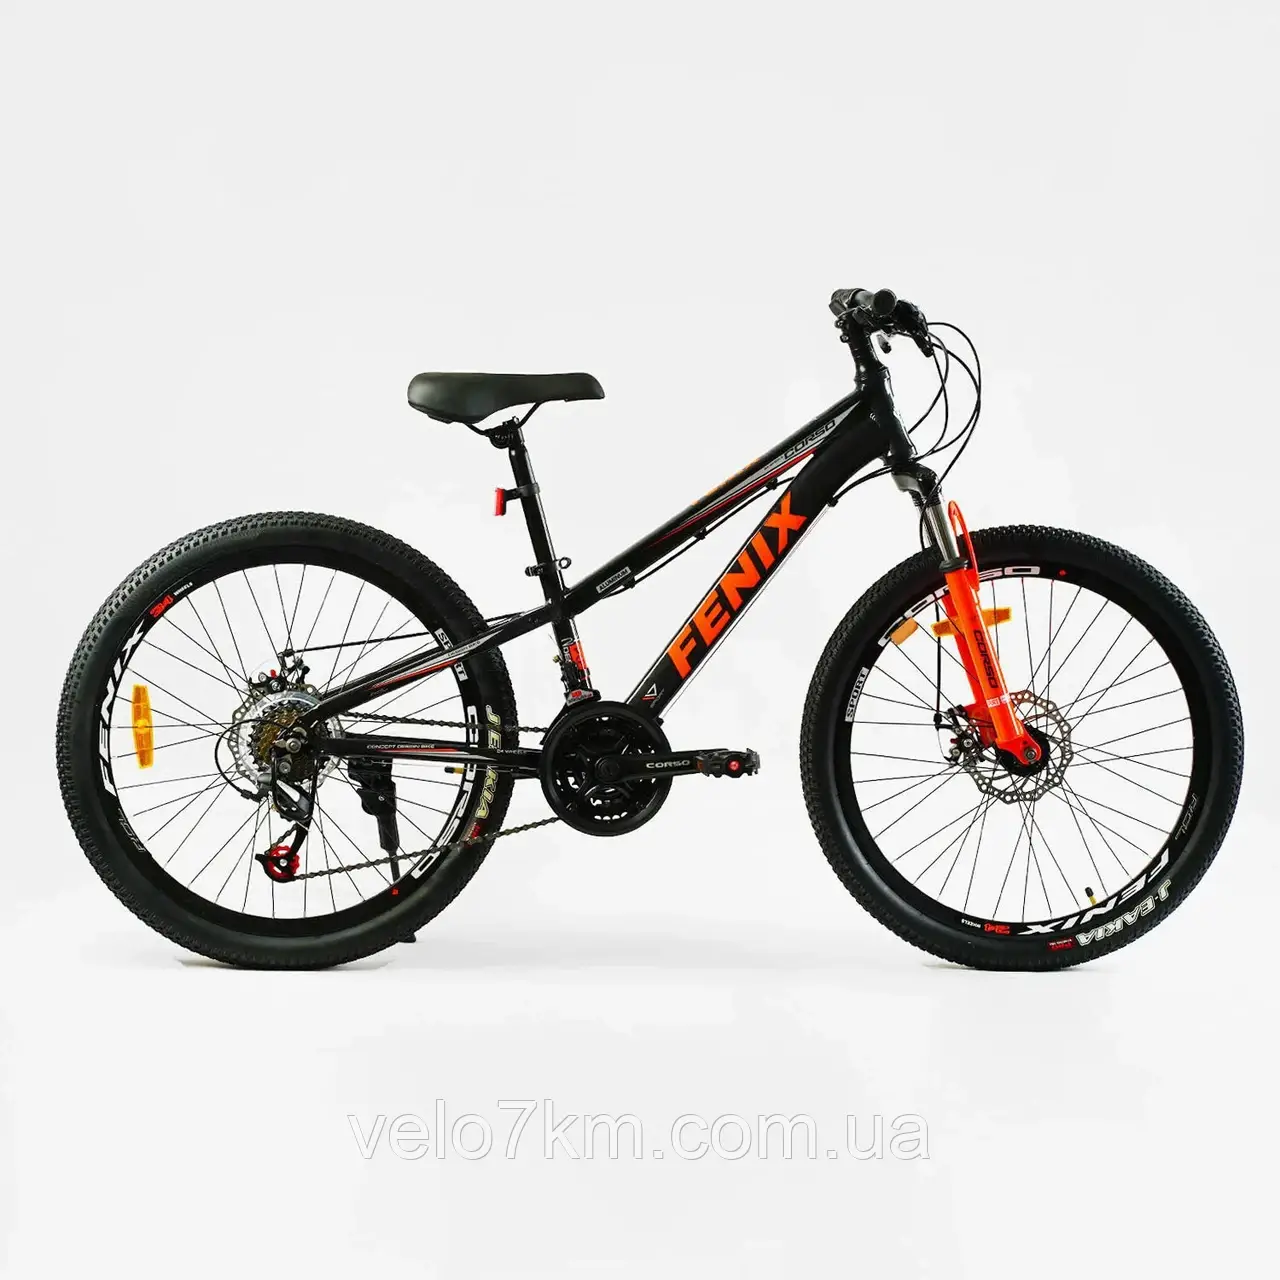 Велосипед спортивний Corso 24" дюйми «Fenix» рама алюмінієва 11’’, обладнання Saiguan 21 швидкість, зібран на 75%